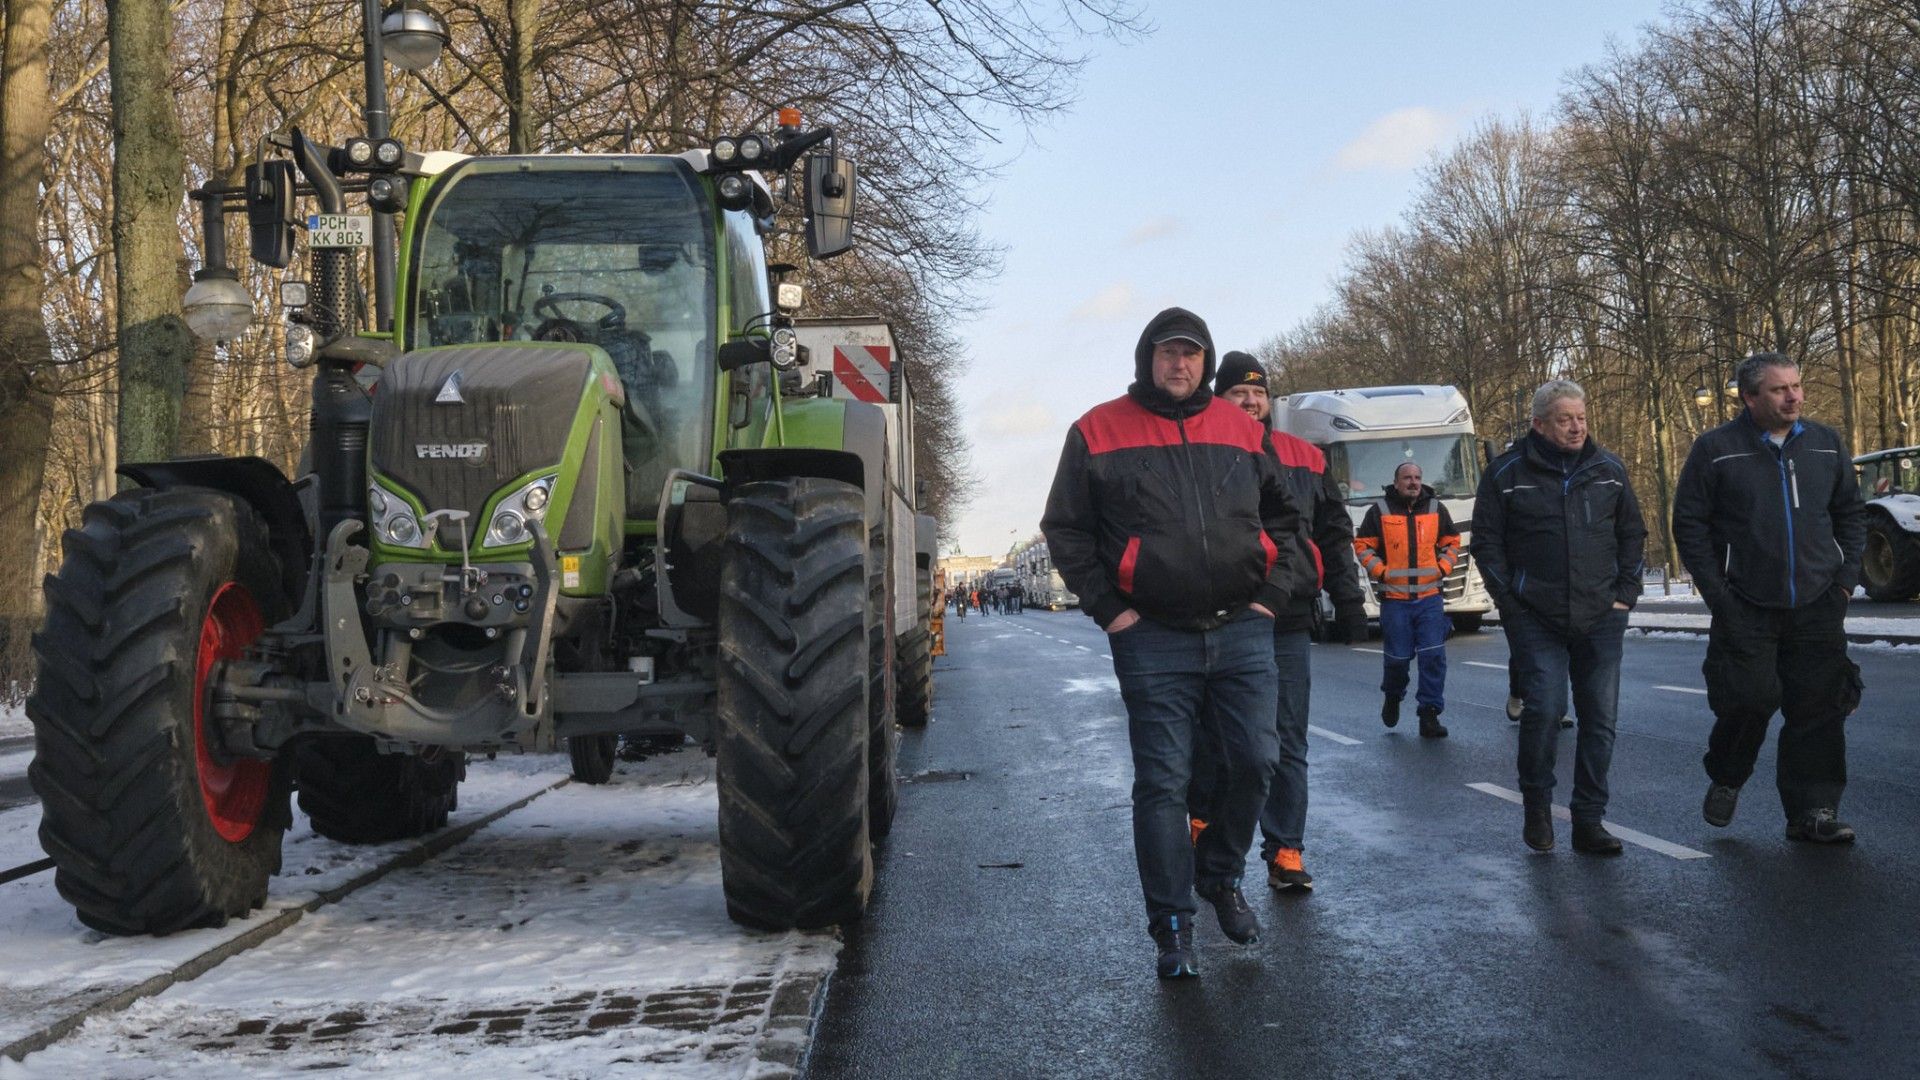 Les protestations des agriculteurs se poursuivent en Allemagne et en France.  Les tracteurs se dirigent vers les capitales